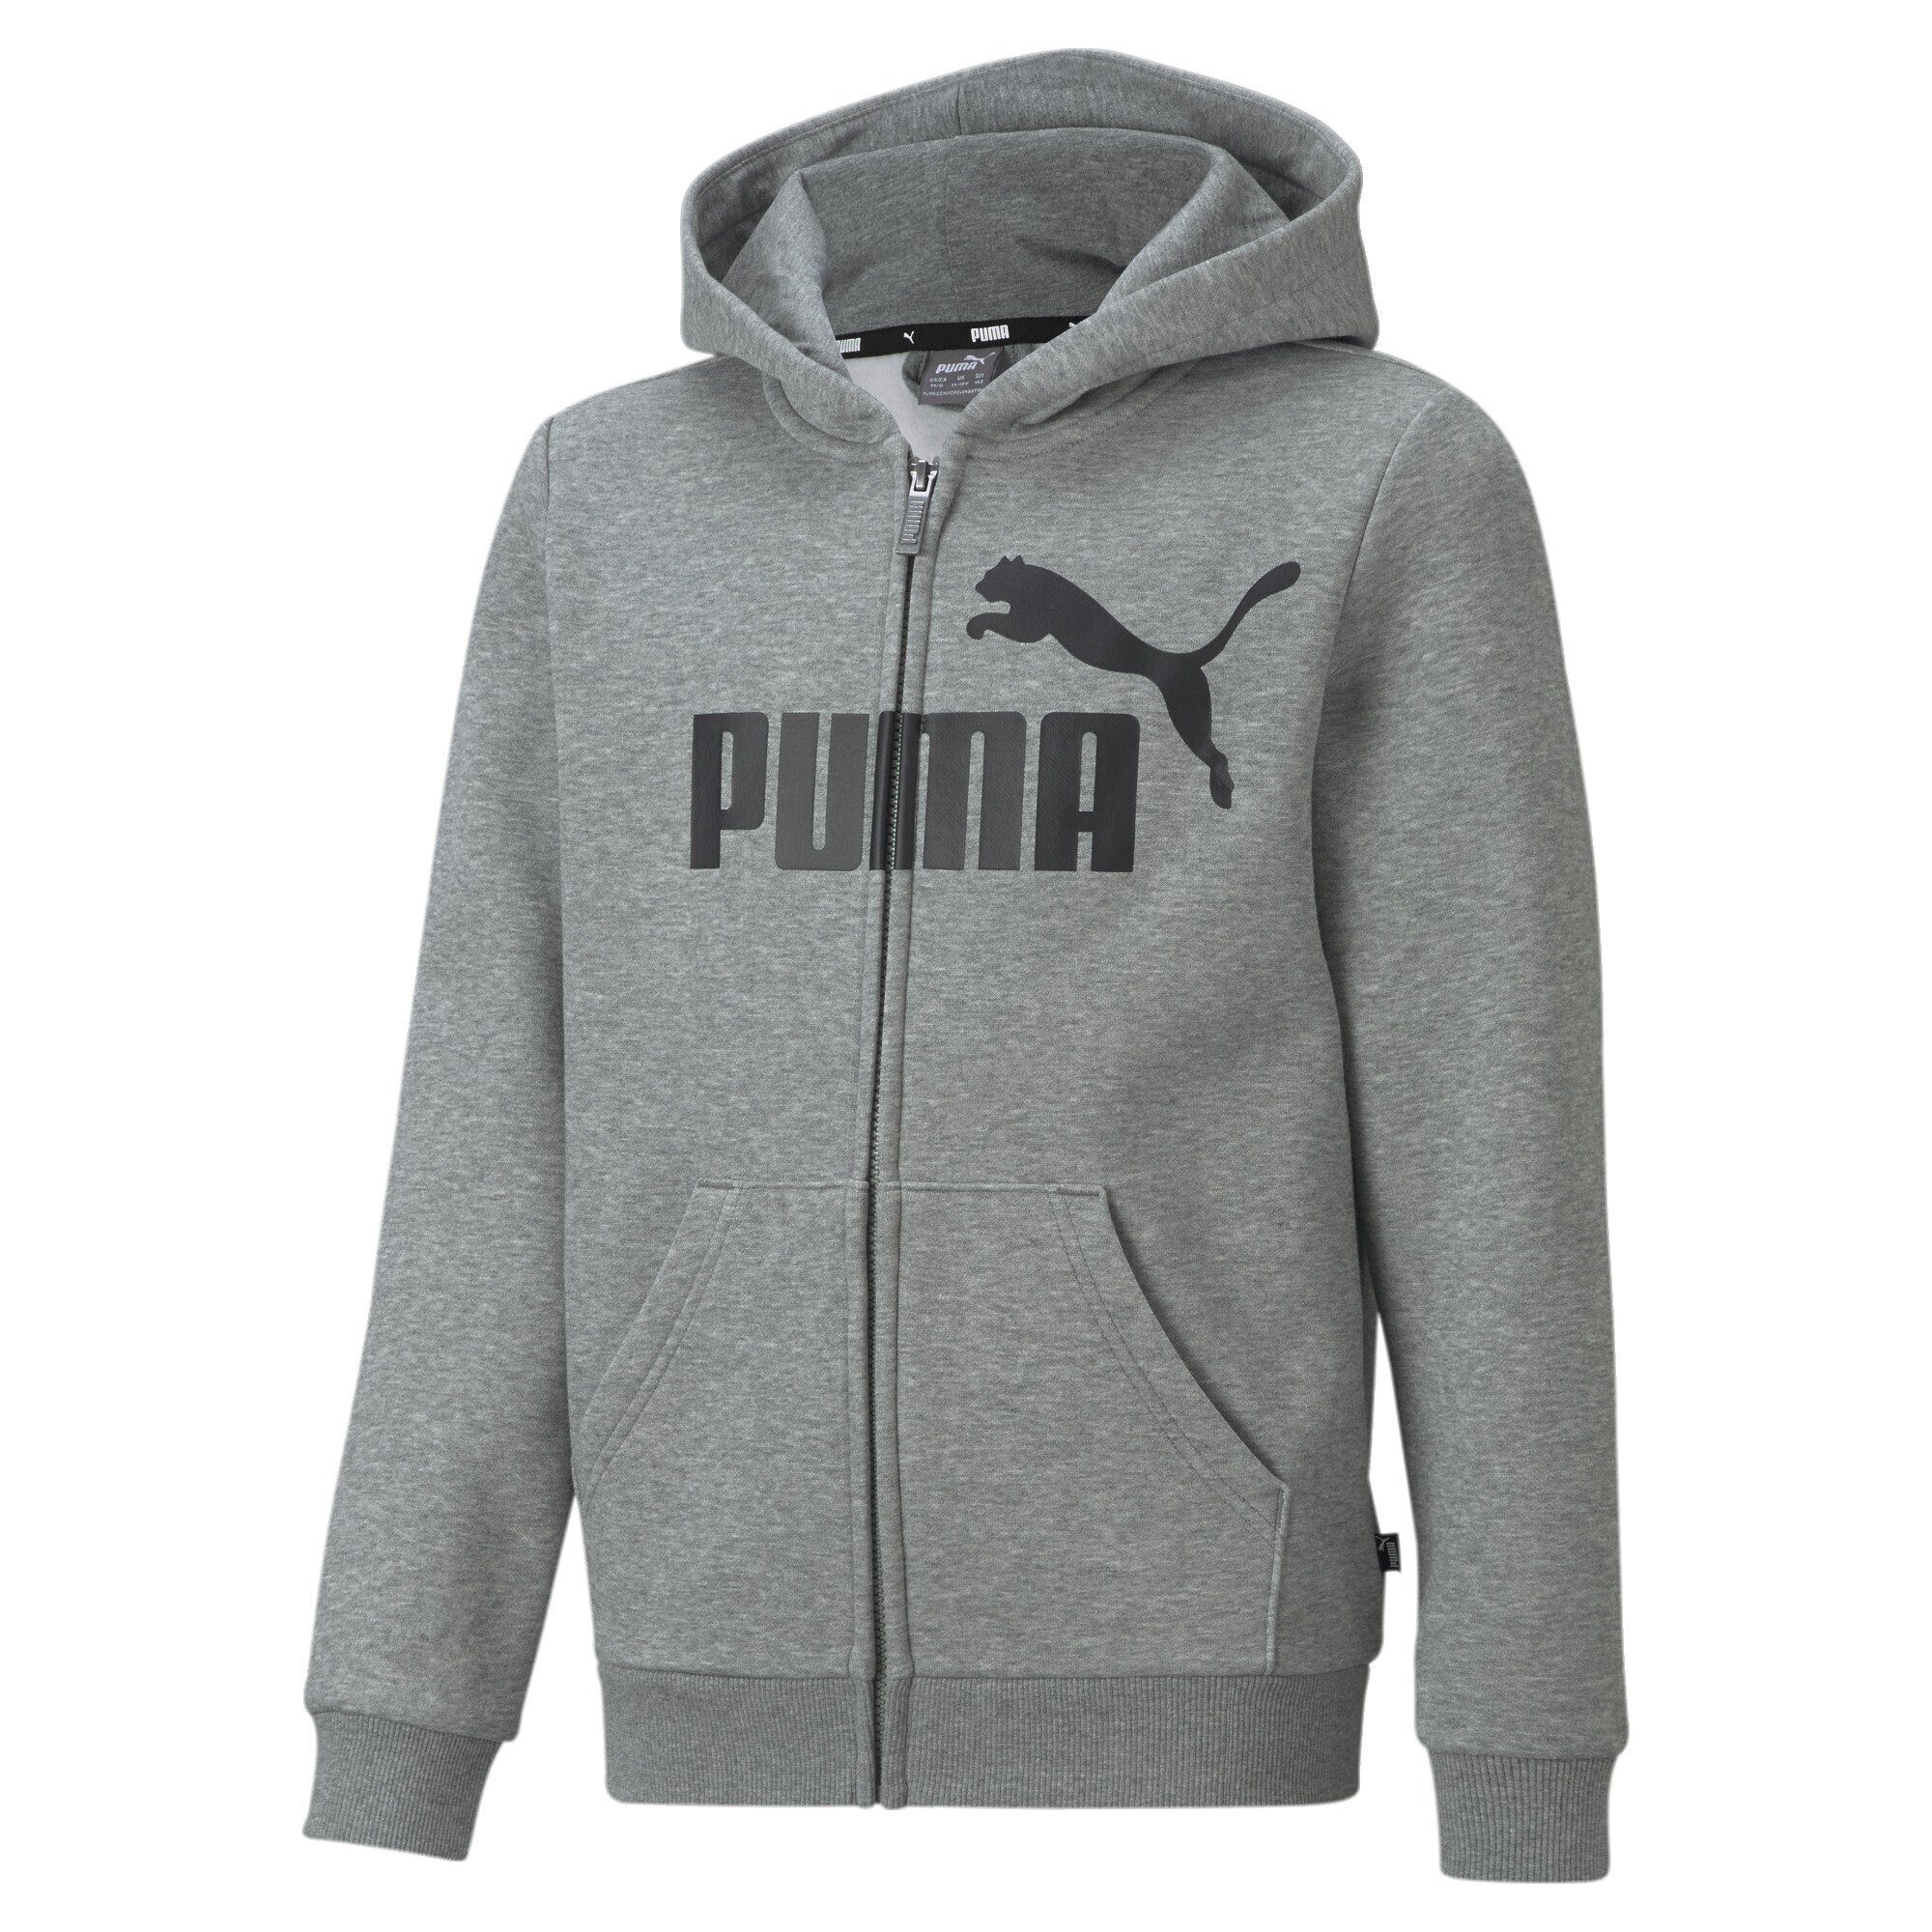 PUMA Sweatshirt Hoodie mit Heather Medium Gray Big Reißverschluss Logo durchgehendem Essentials